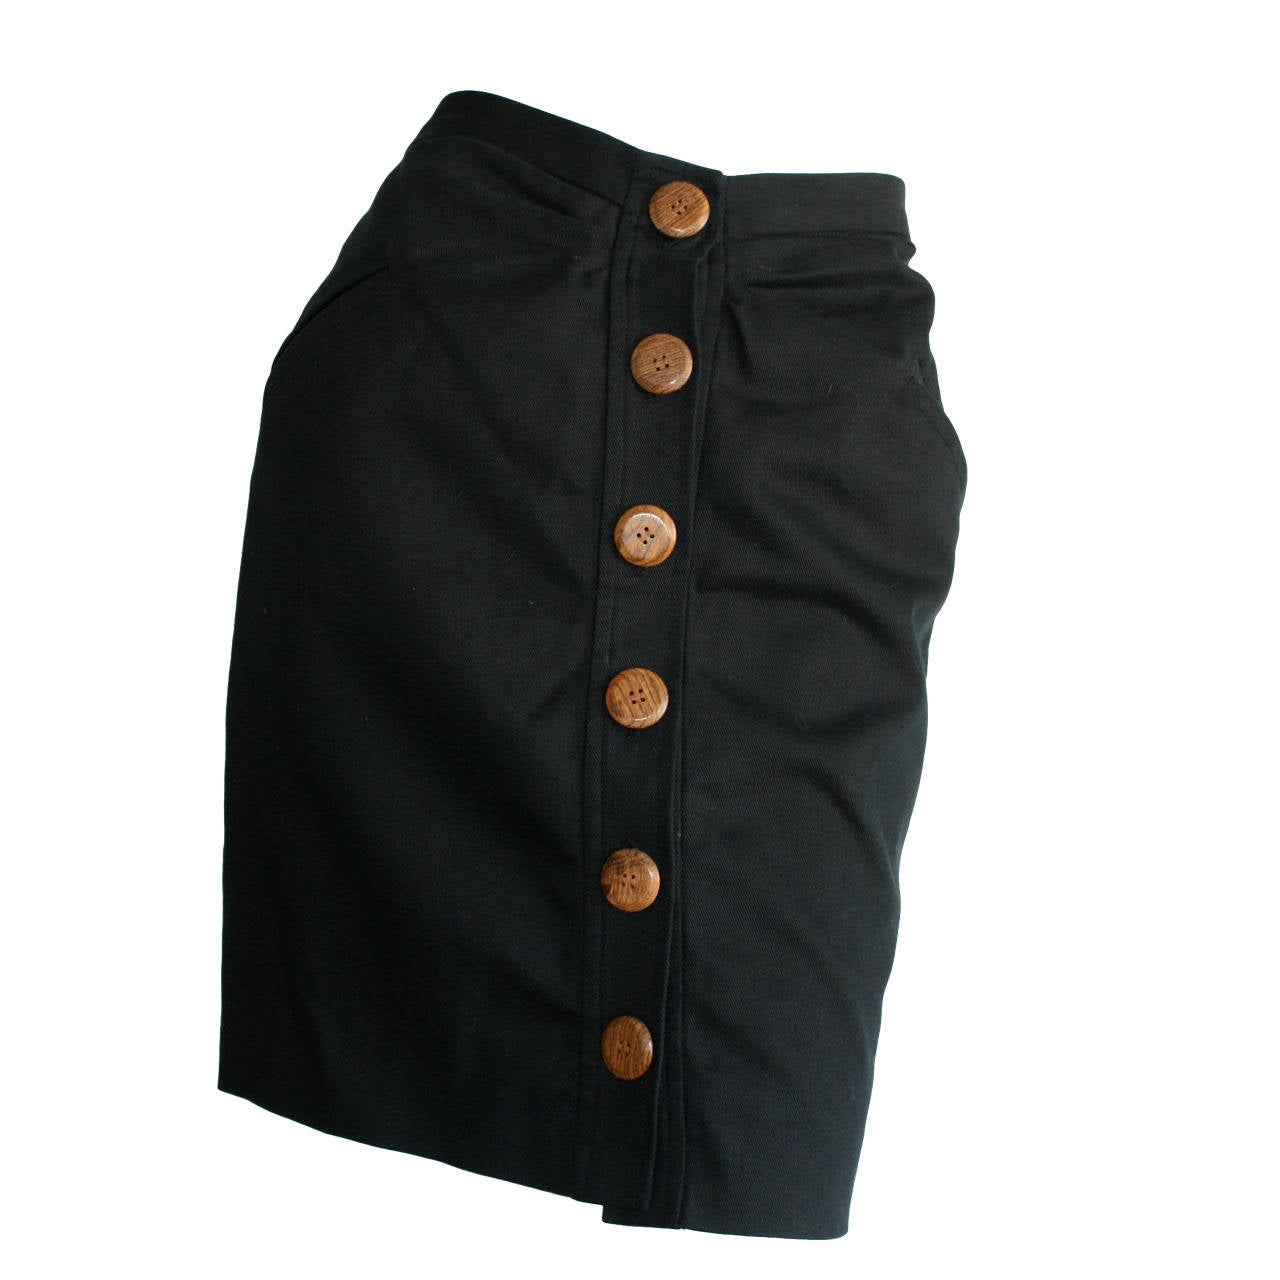 Chic Vintage Yves Saint Laurent " Rive Gauche " Black Mini Skirt w/ Wood Buttons